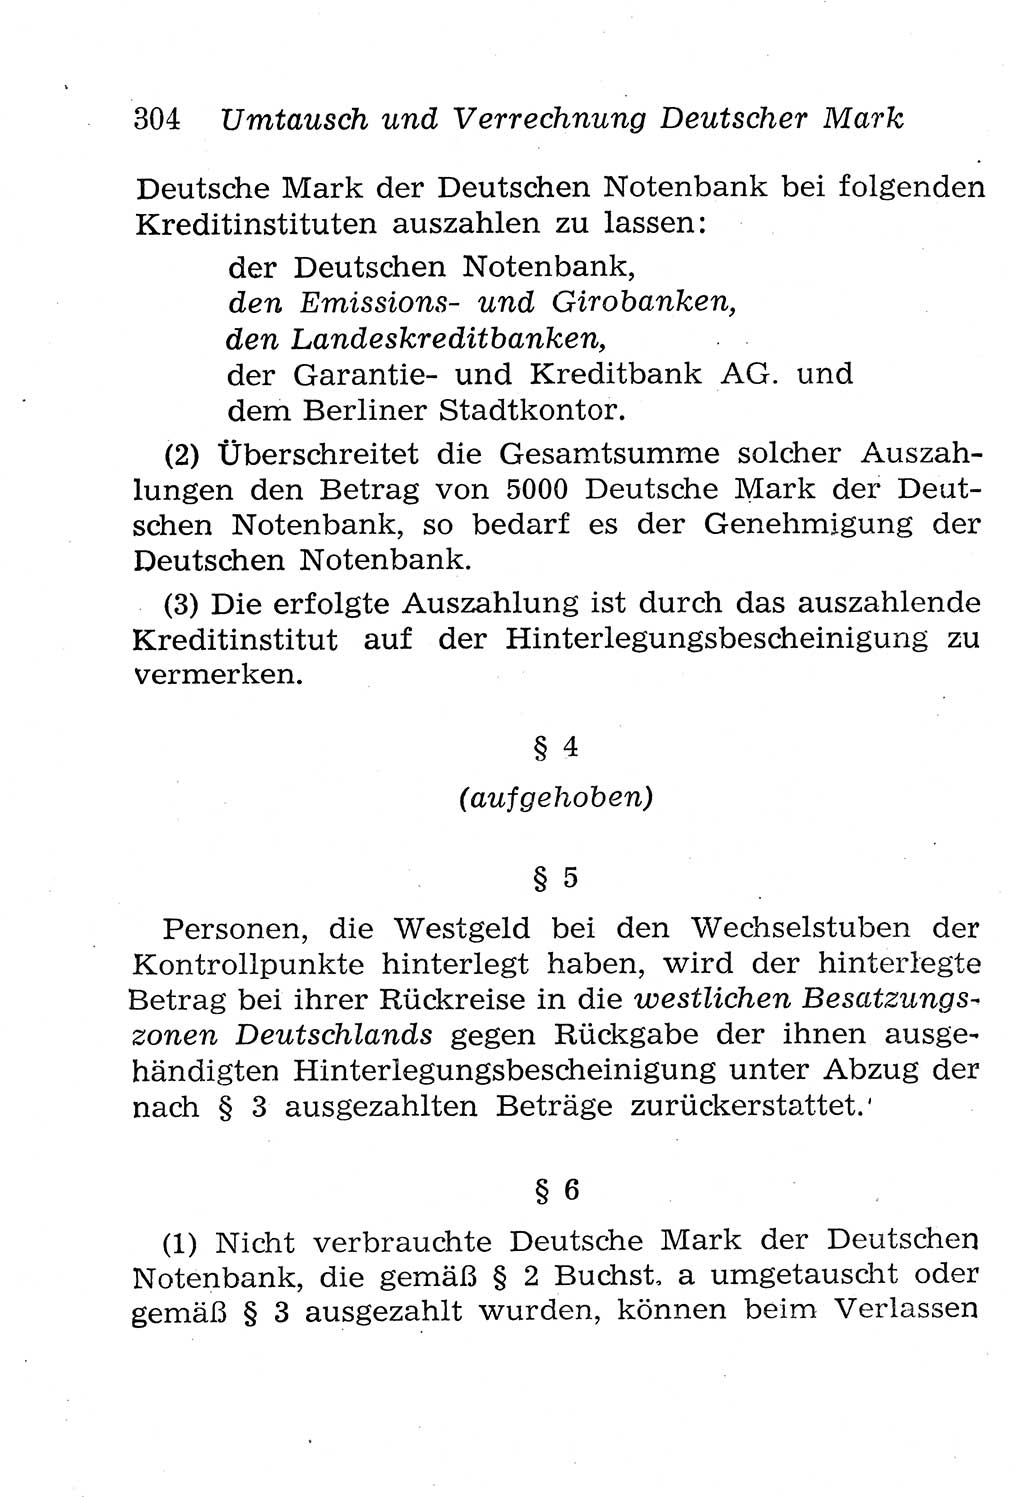 Strafgesetzbuch (StGB) und andere Strafgesetze [Deutsche Demokratische Republik (DDR)] 1958, Seite 304 (StGB Strafges. DDR 1958, S. 304)